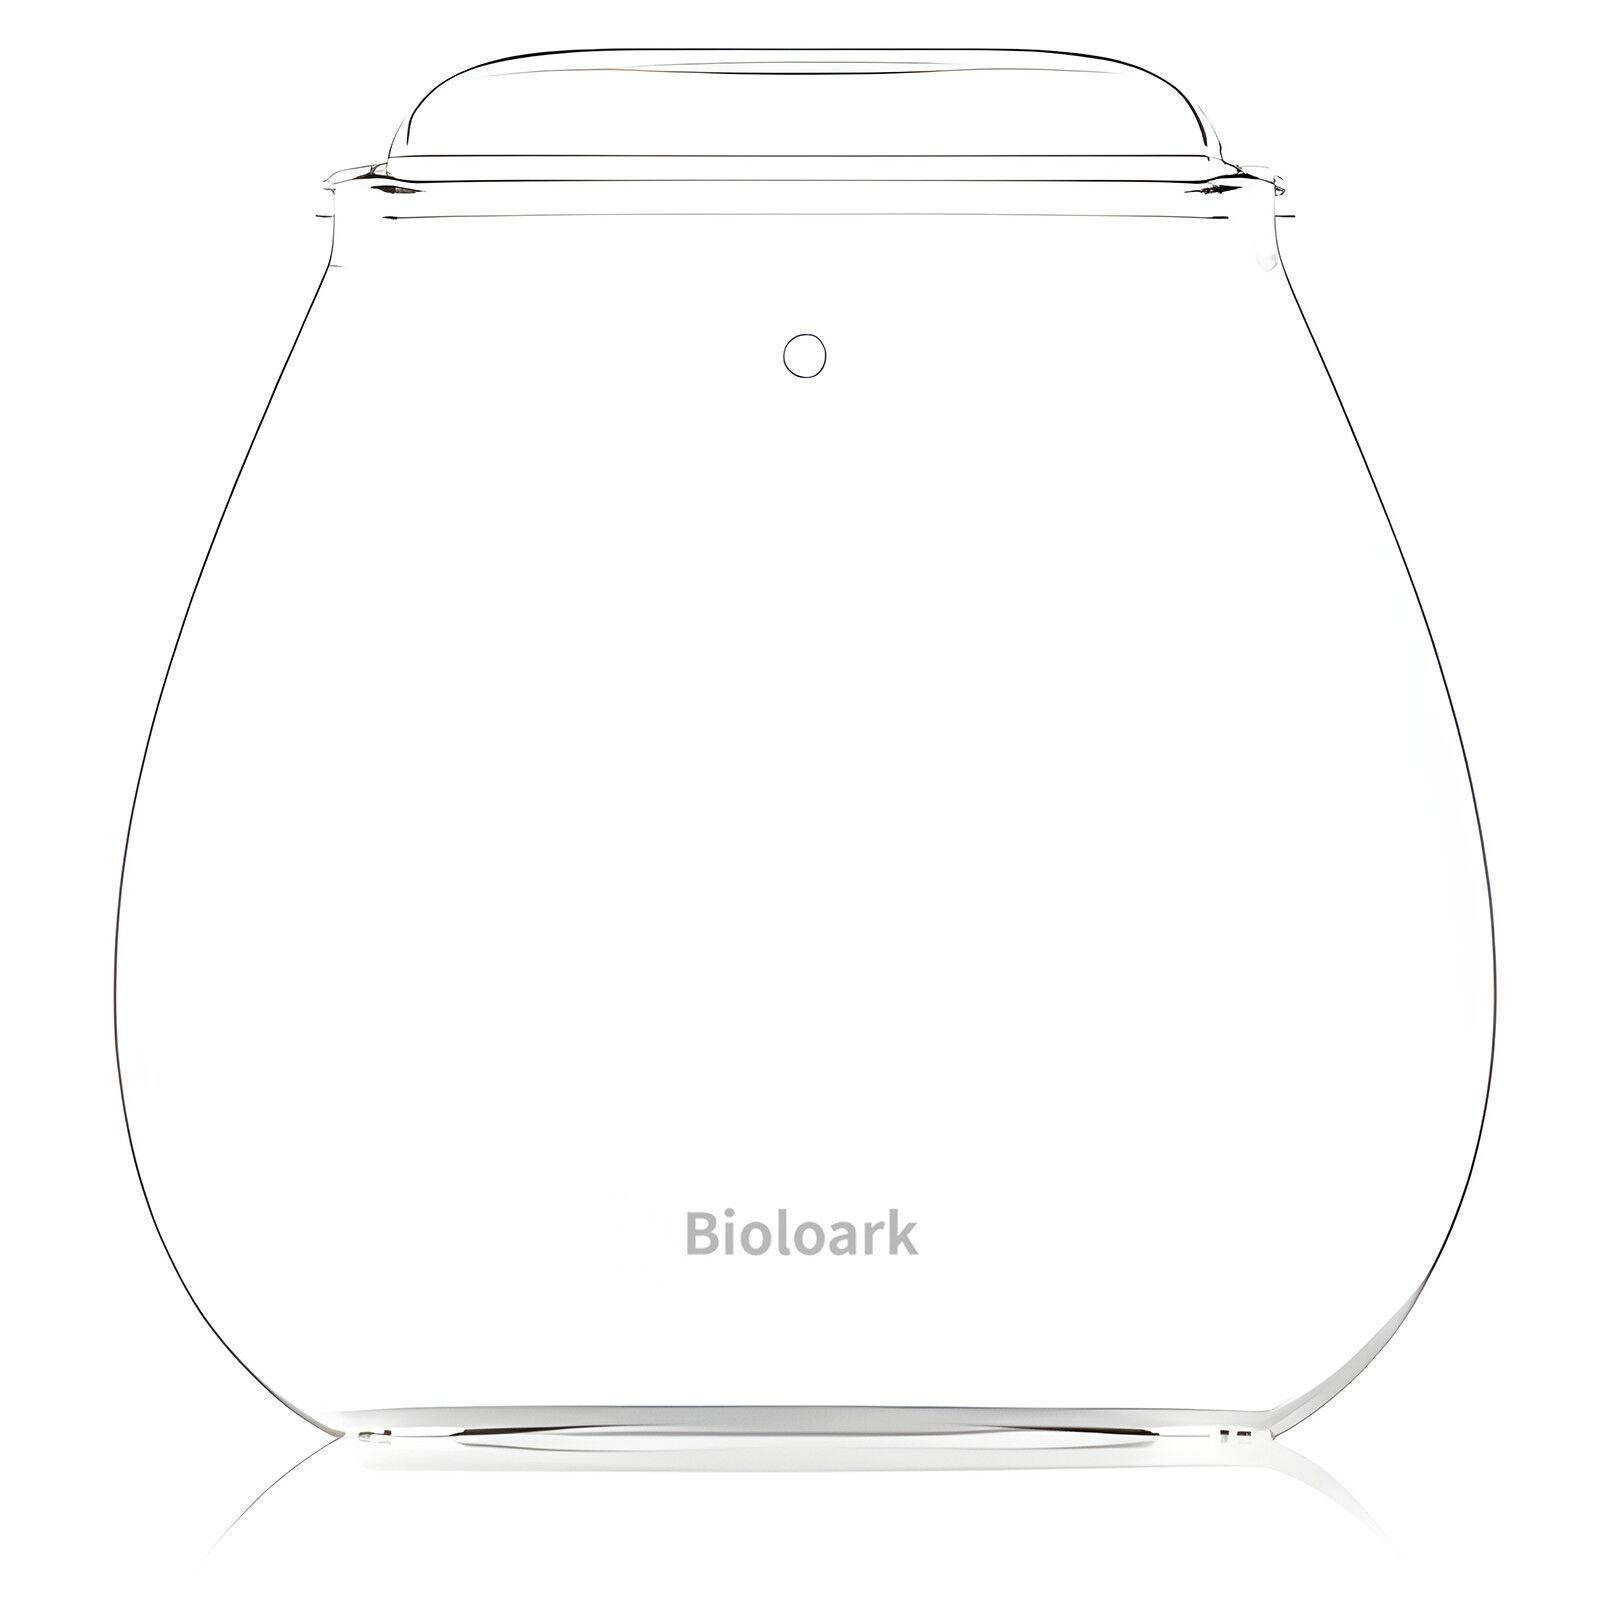 Bioloark - Bubble Cup